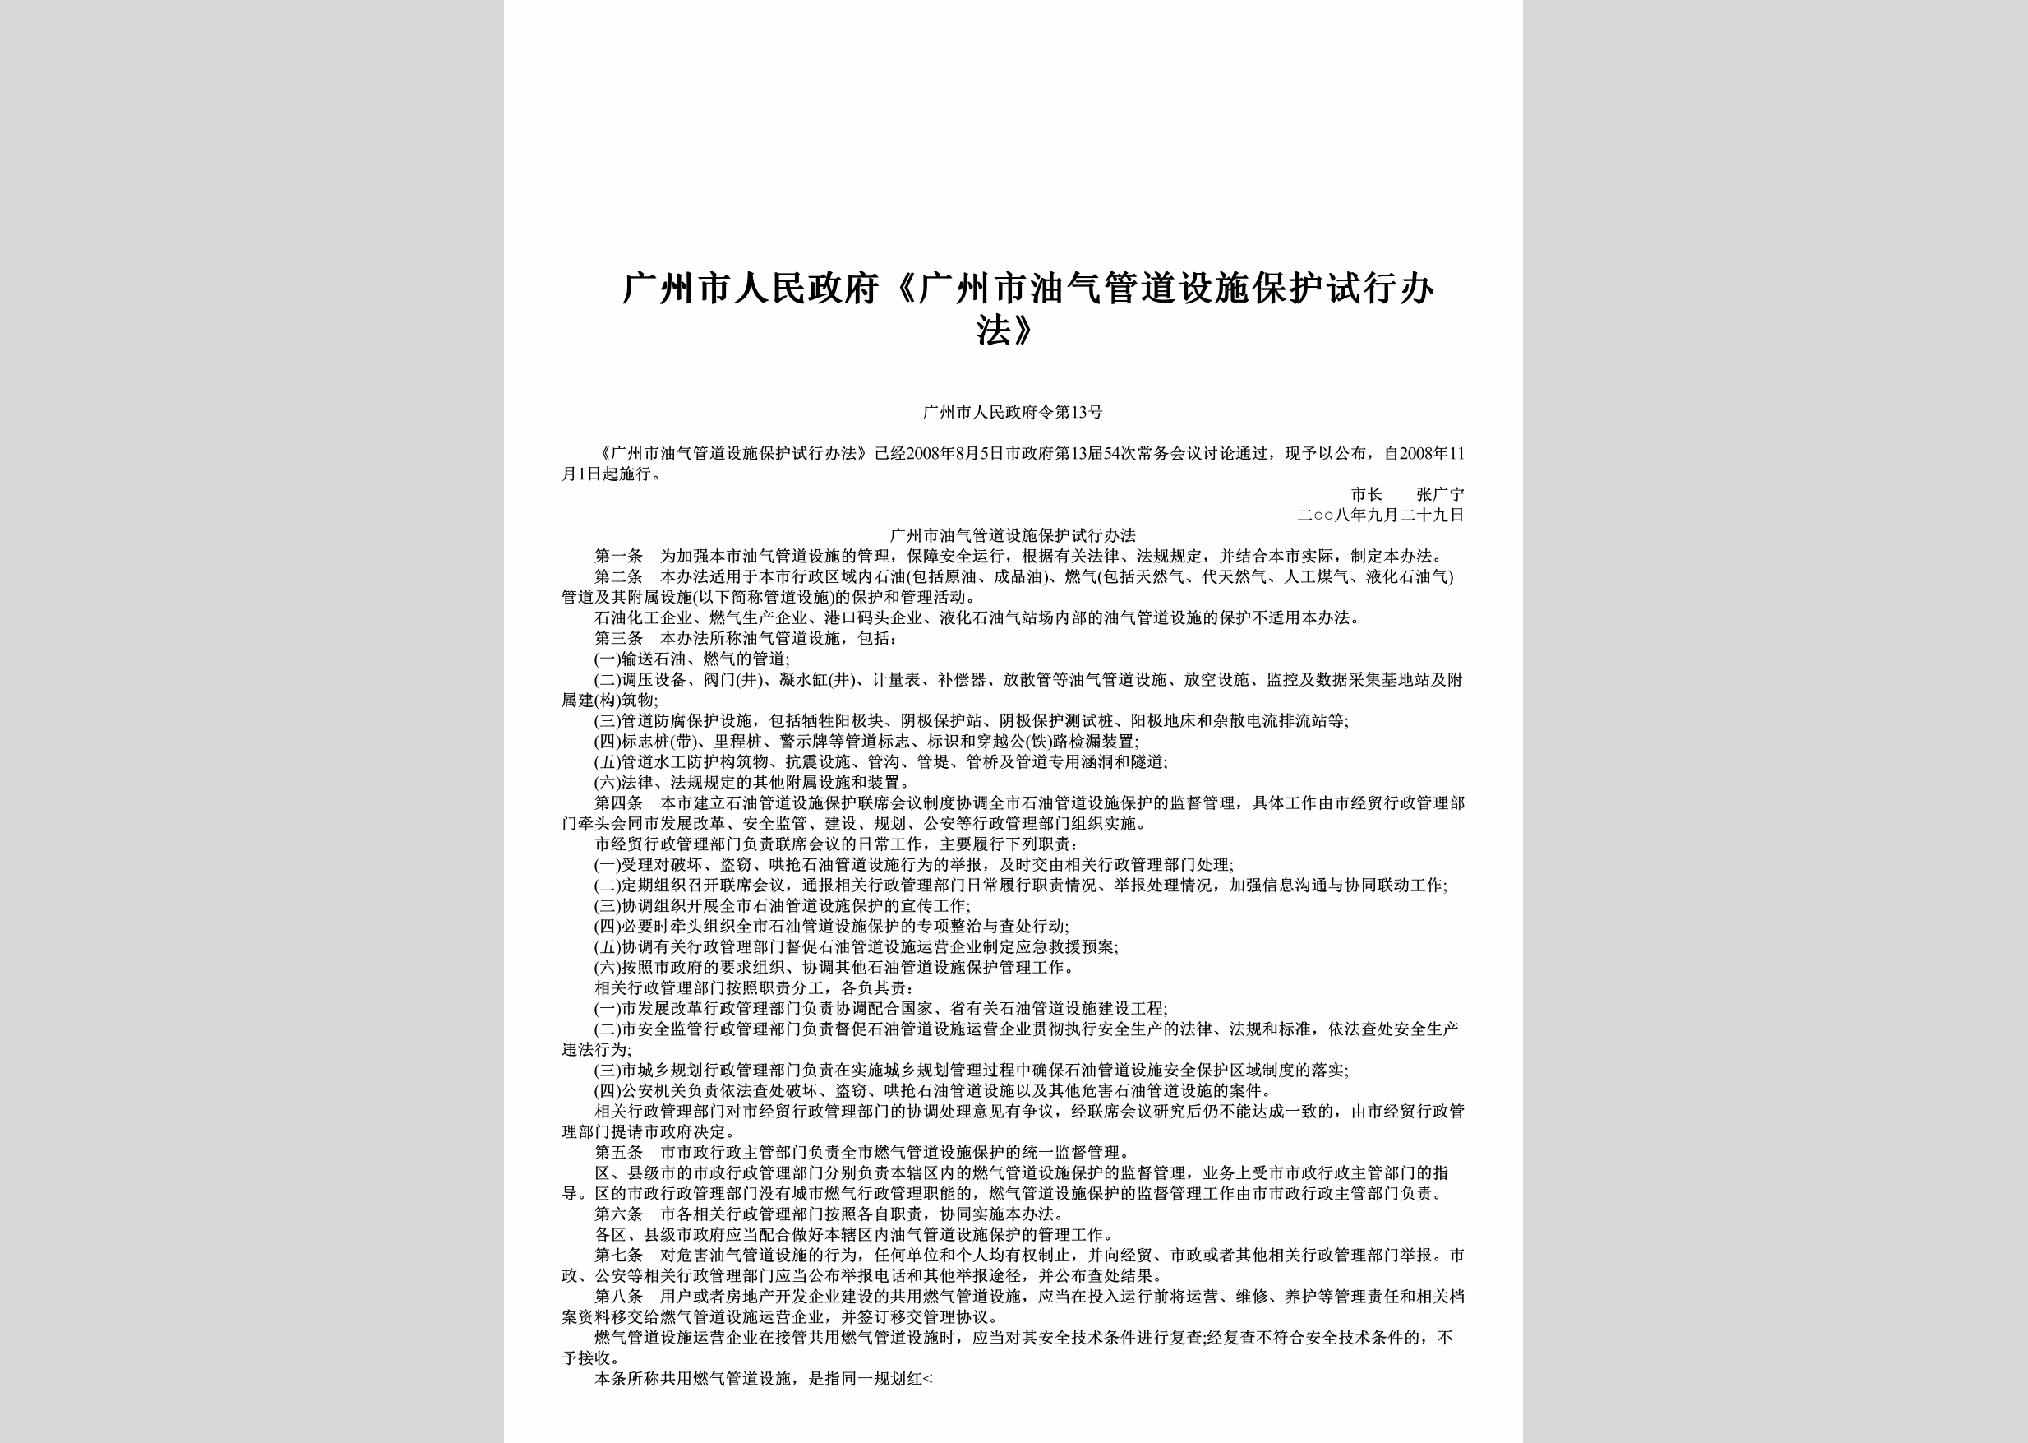 广州市人民政府令第13号：《广州市油气管道设施保护试行办法》